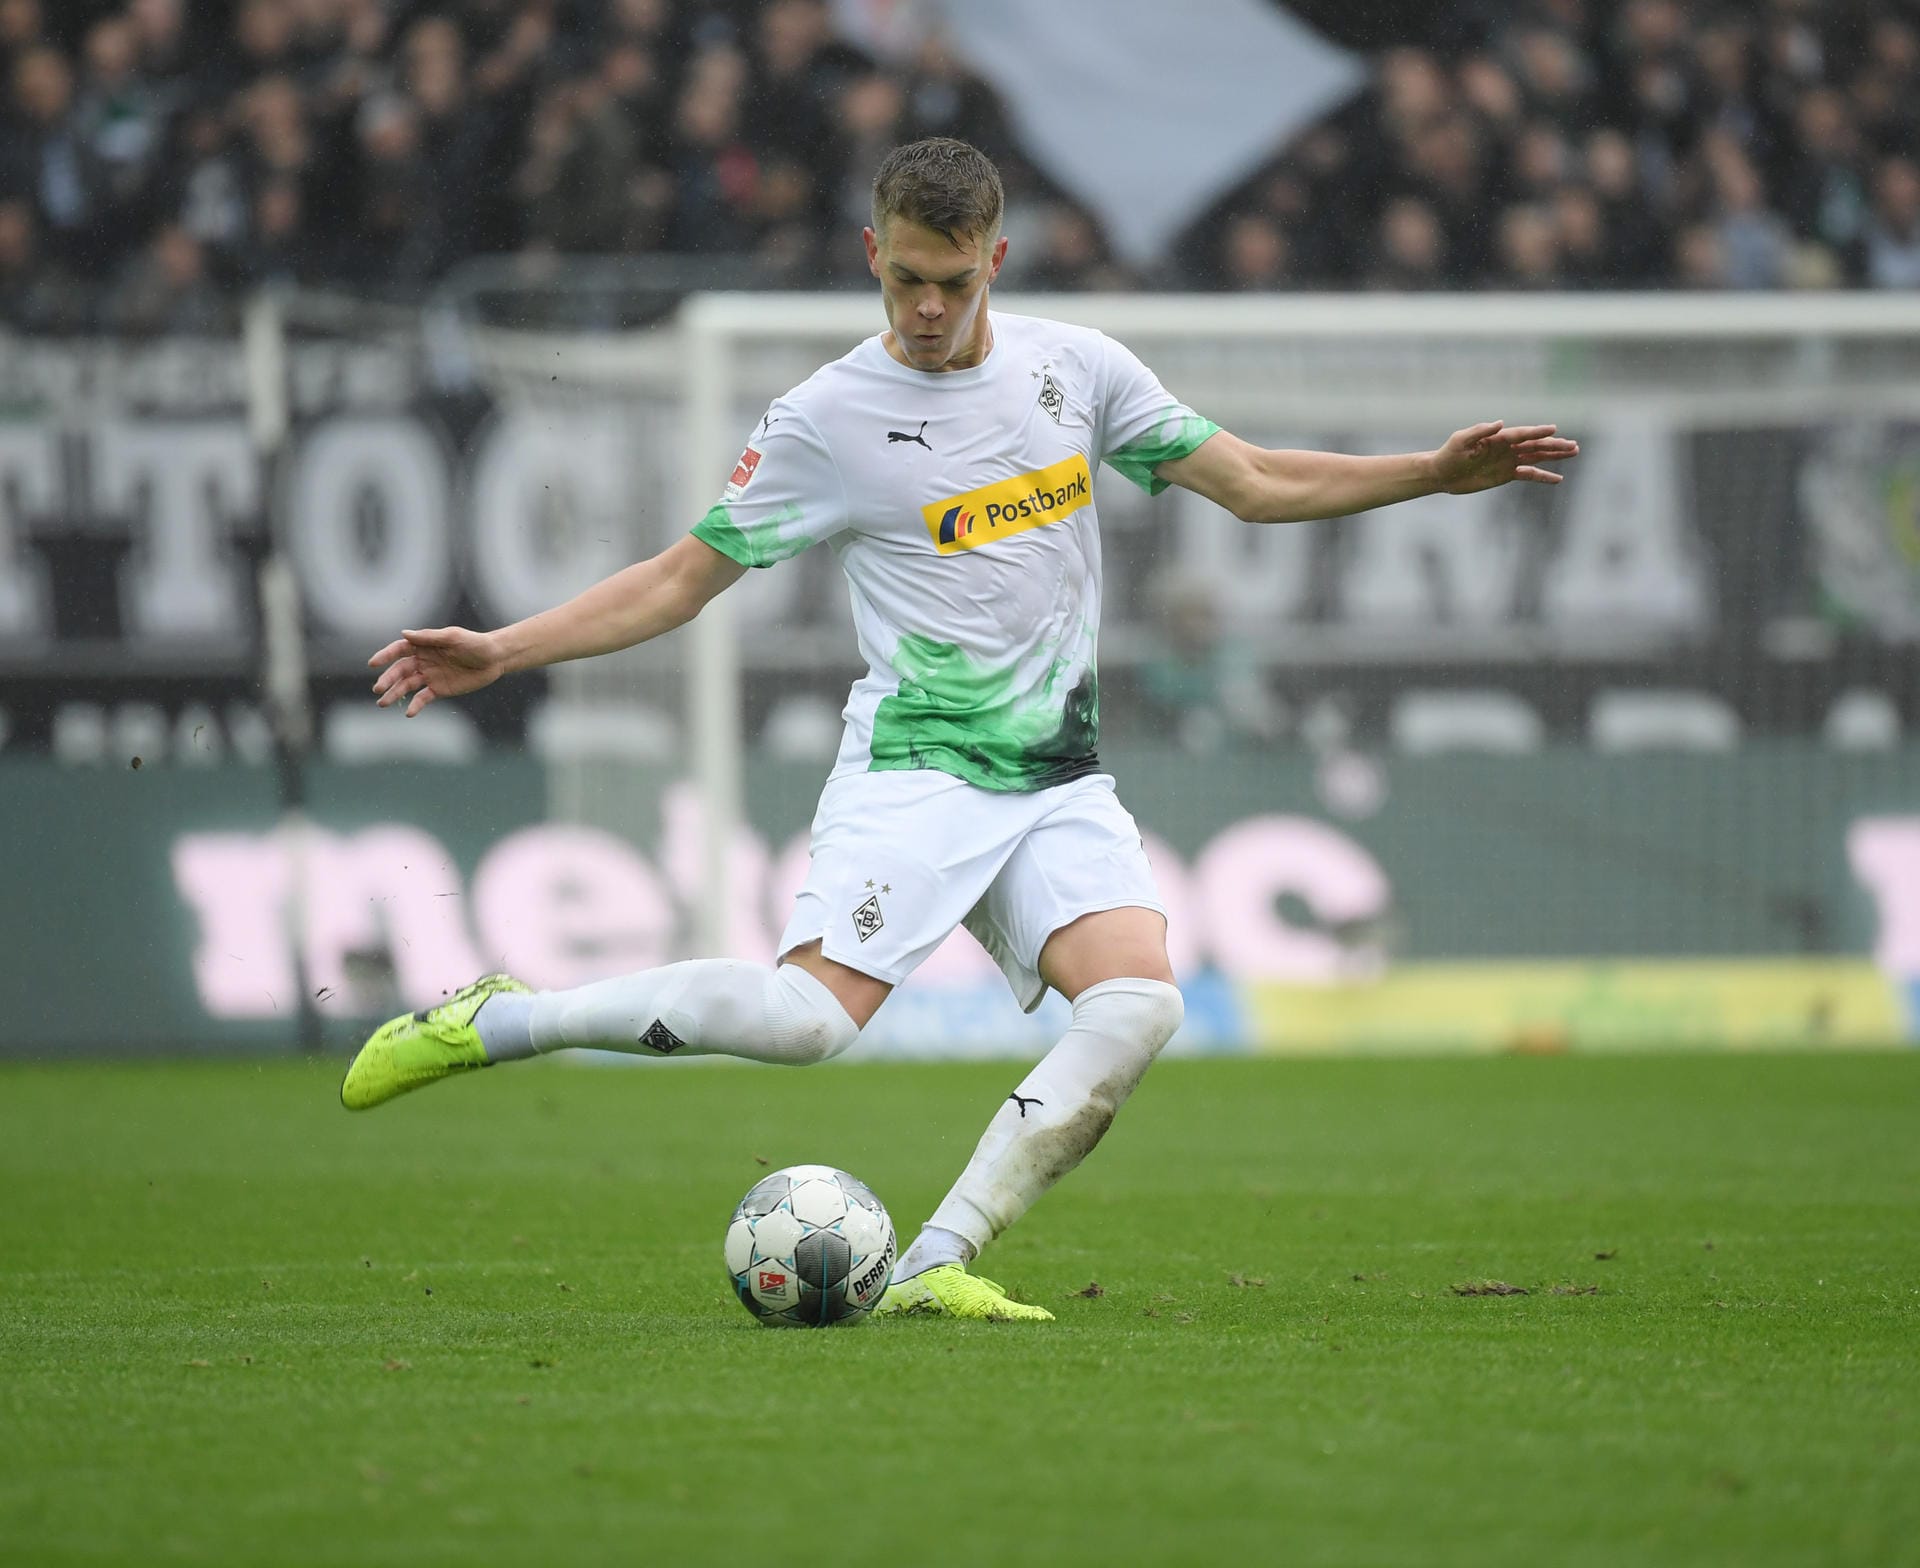 Matthias Ginter (28): Seine Zeit kam erst nach dem WM-Titel, Ginter gilt als Teil der neuen Mannschaft sein. Unverzichtbar bei Borussia Mönchengladbach.